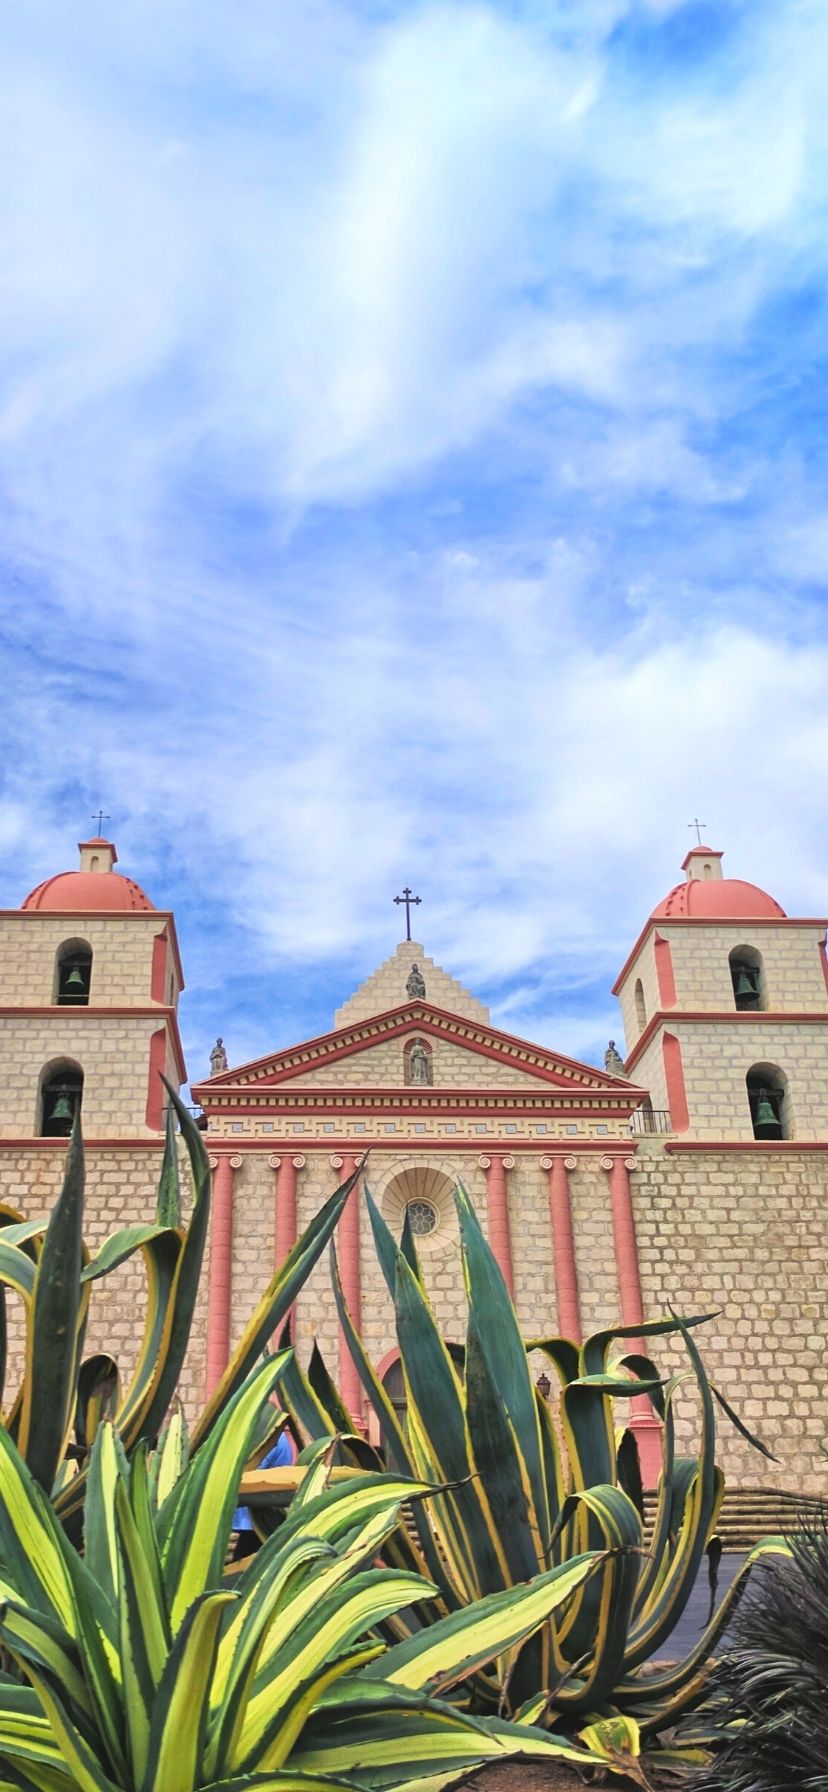 Mission Santa Barbara - Best California Missions